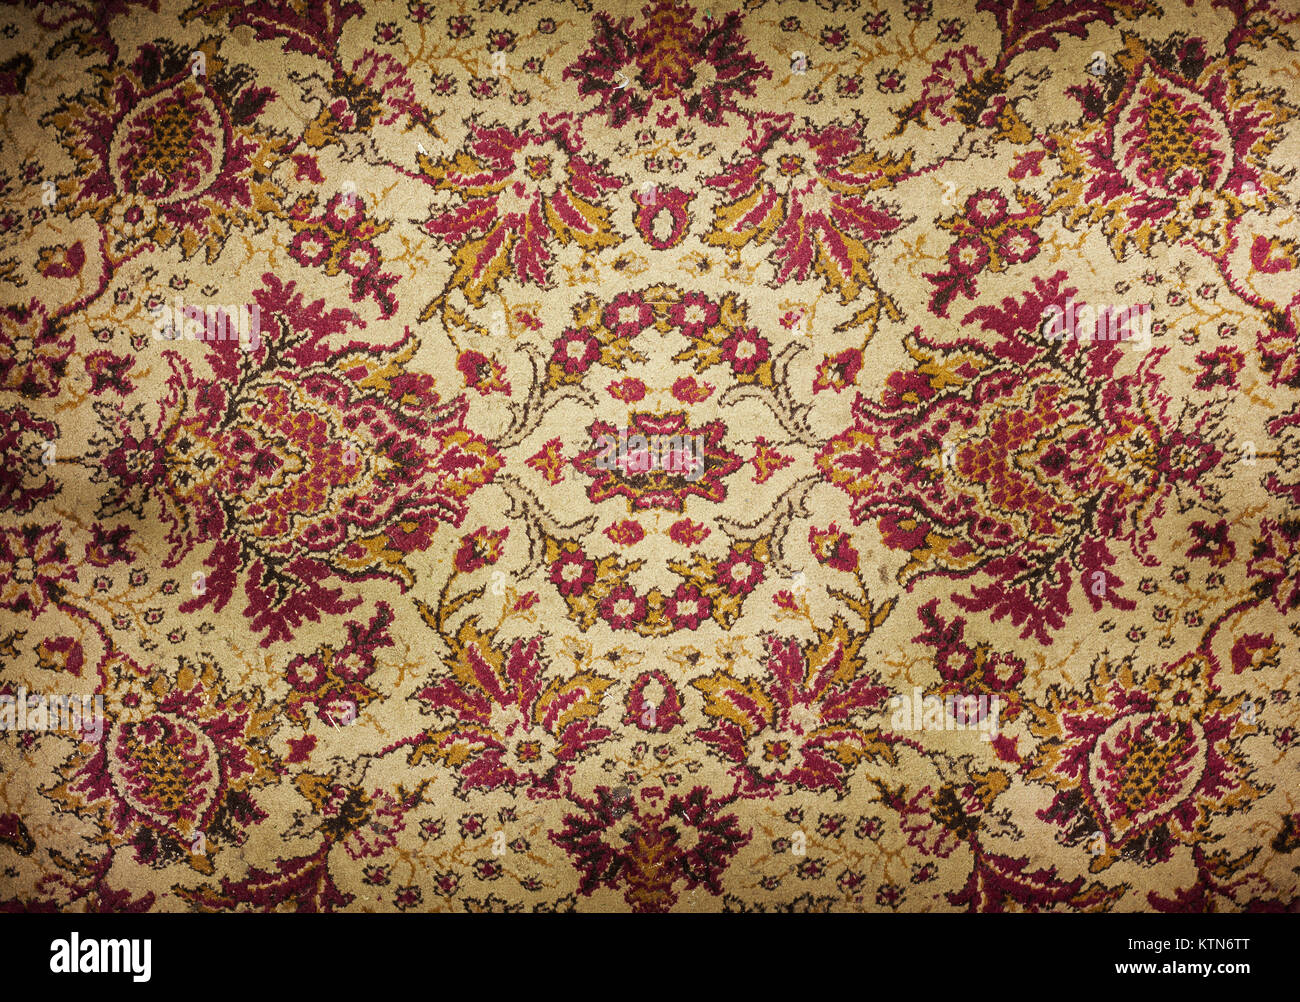 La texture d'un vieux tapis décoratifs colorés. Banque D'Images